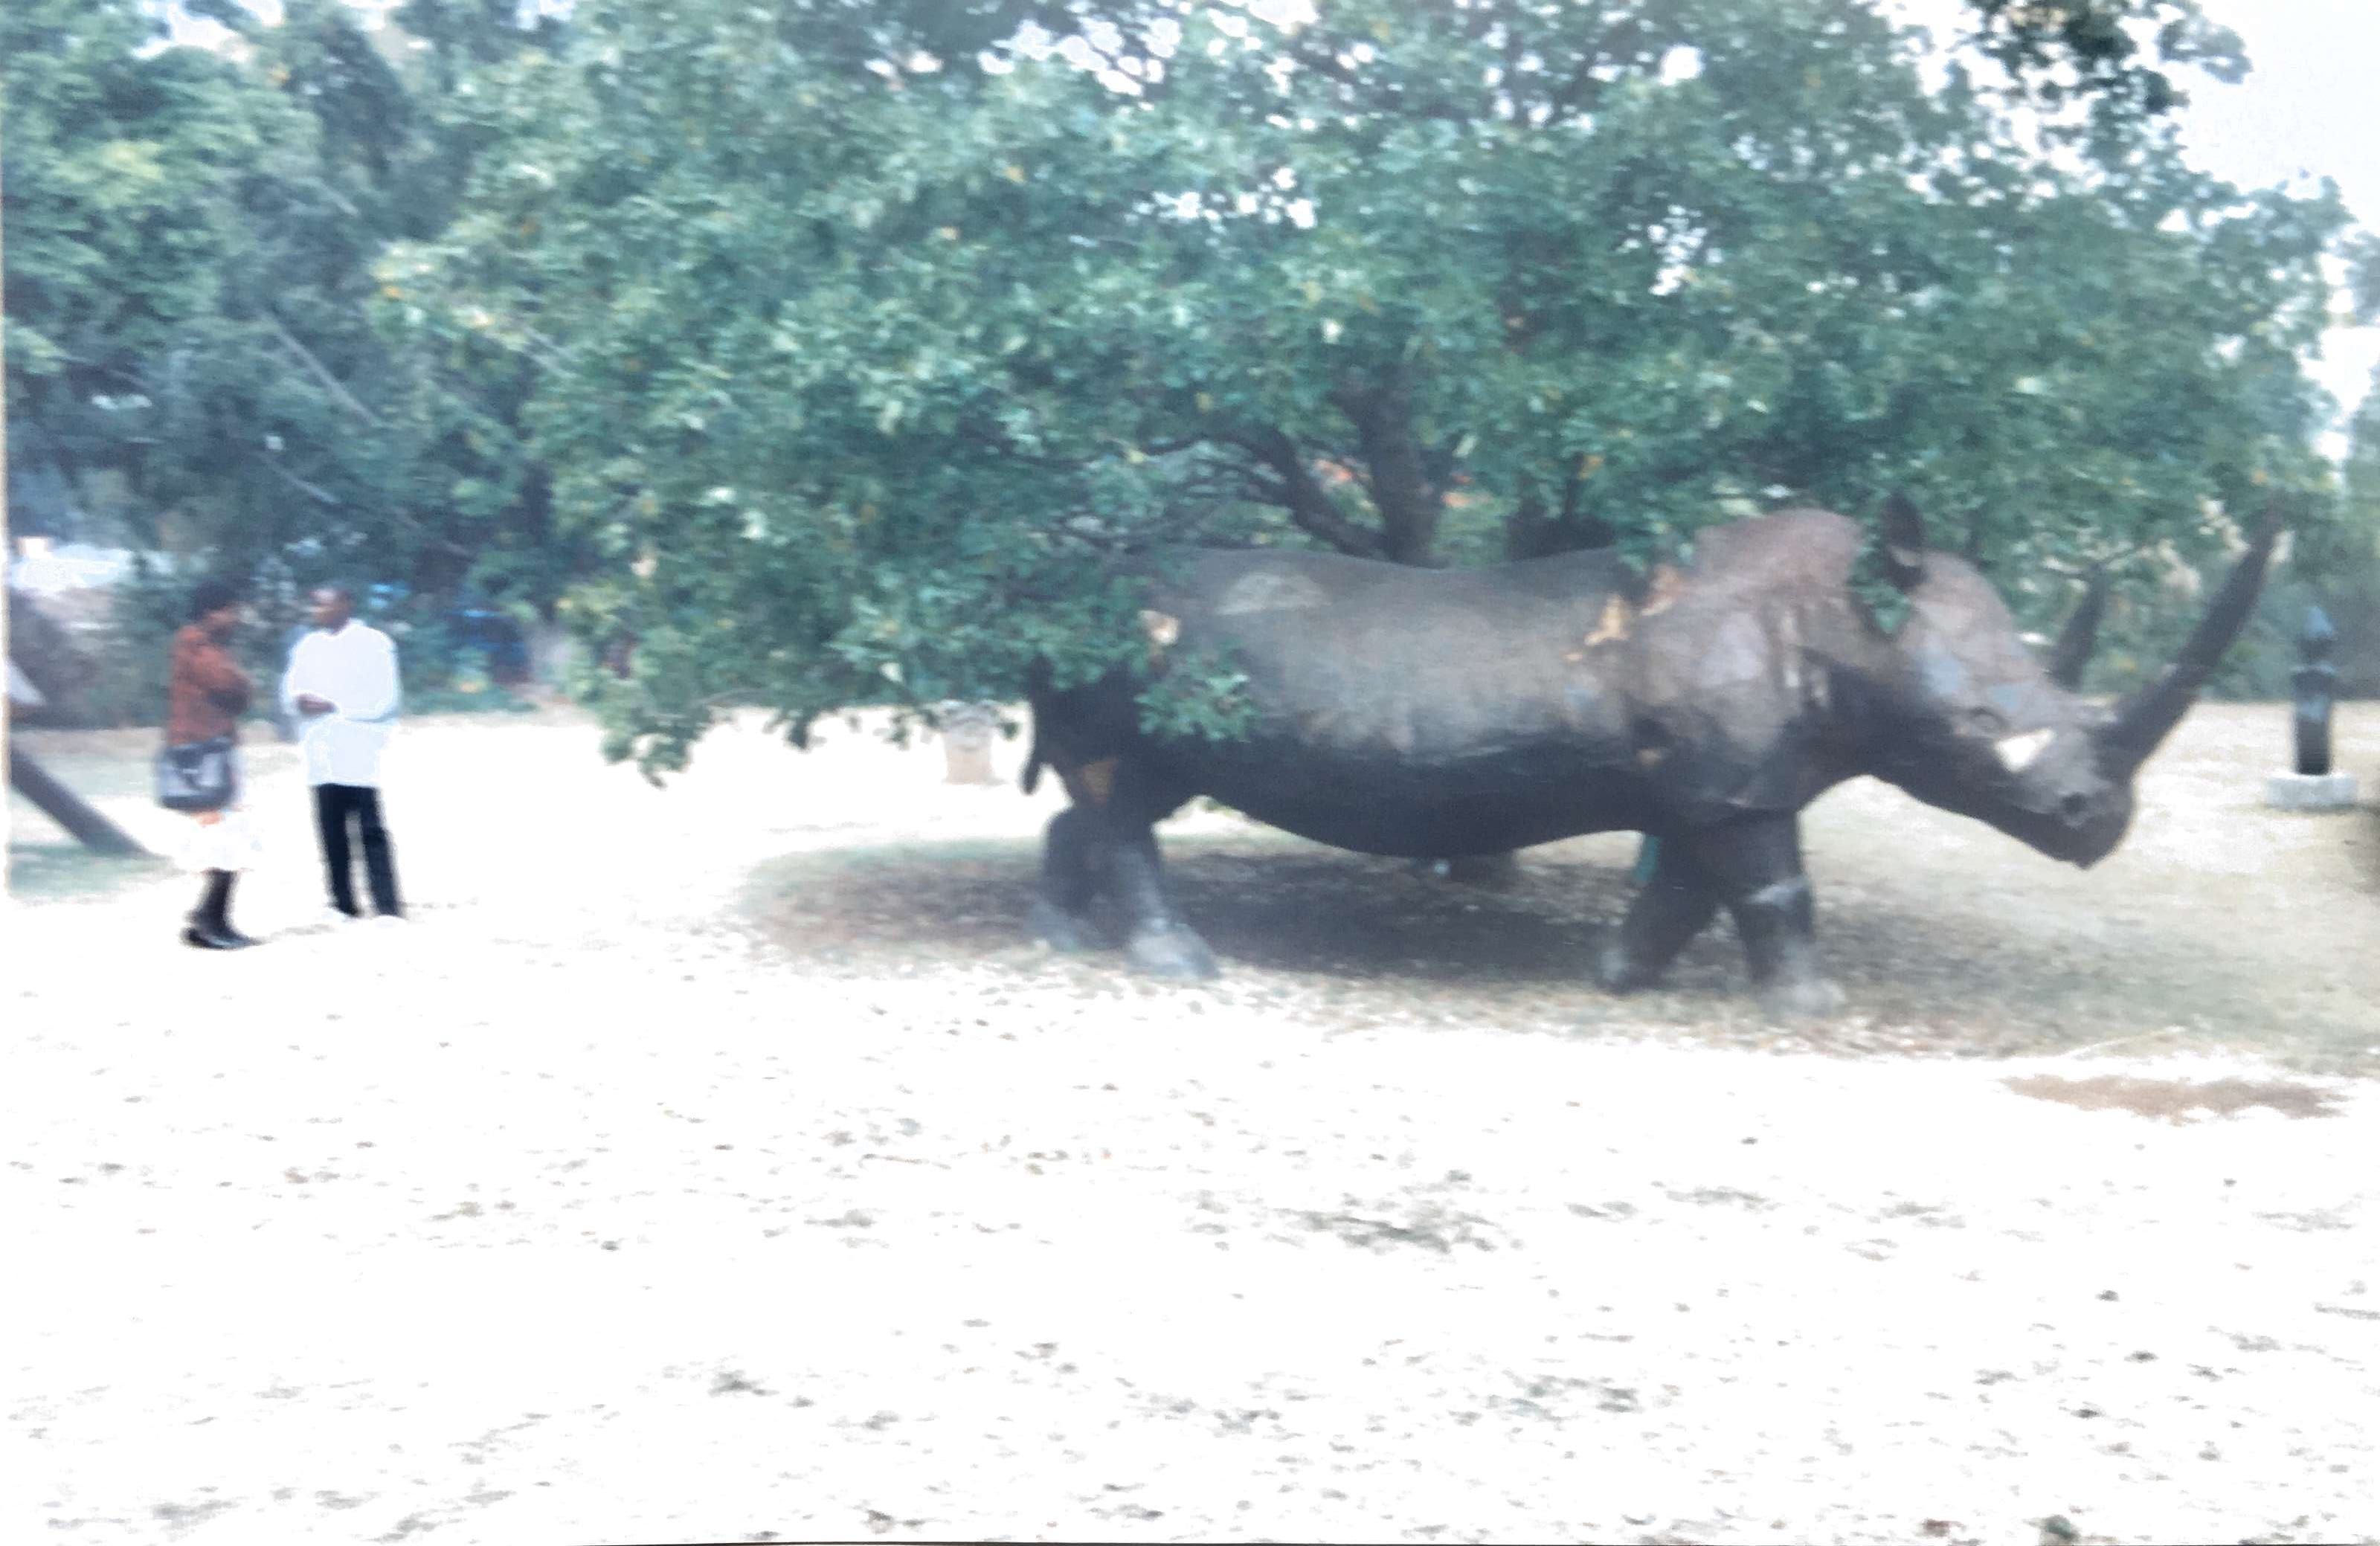 Metallic sculpture of a Rhino in Harare. Zimbabwe.